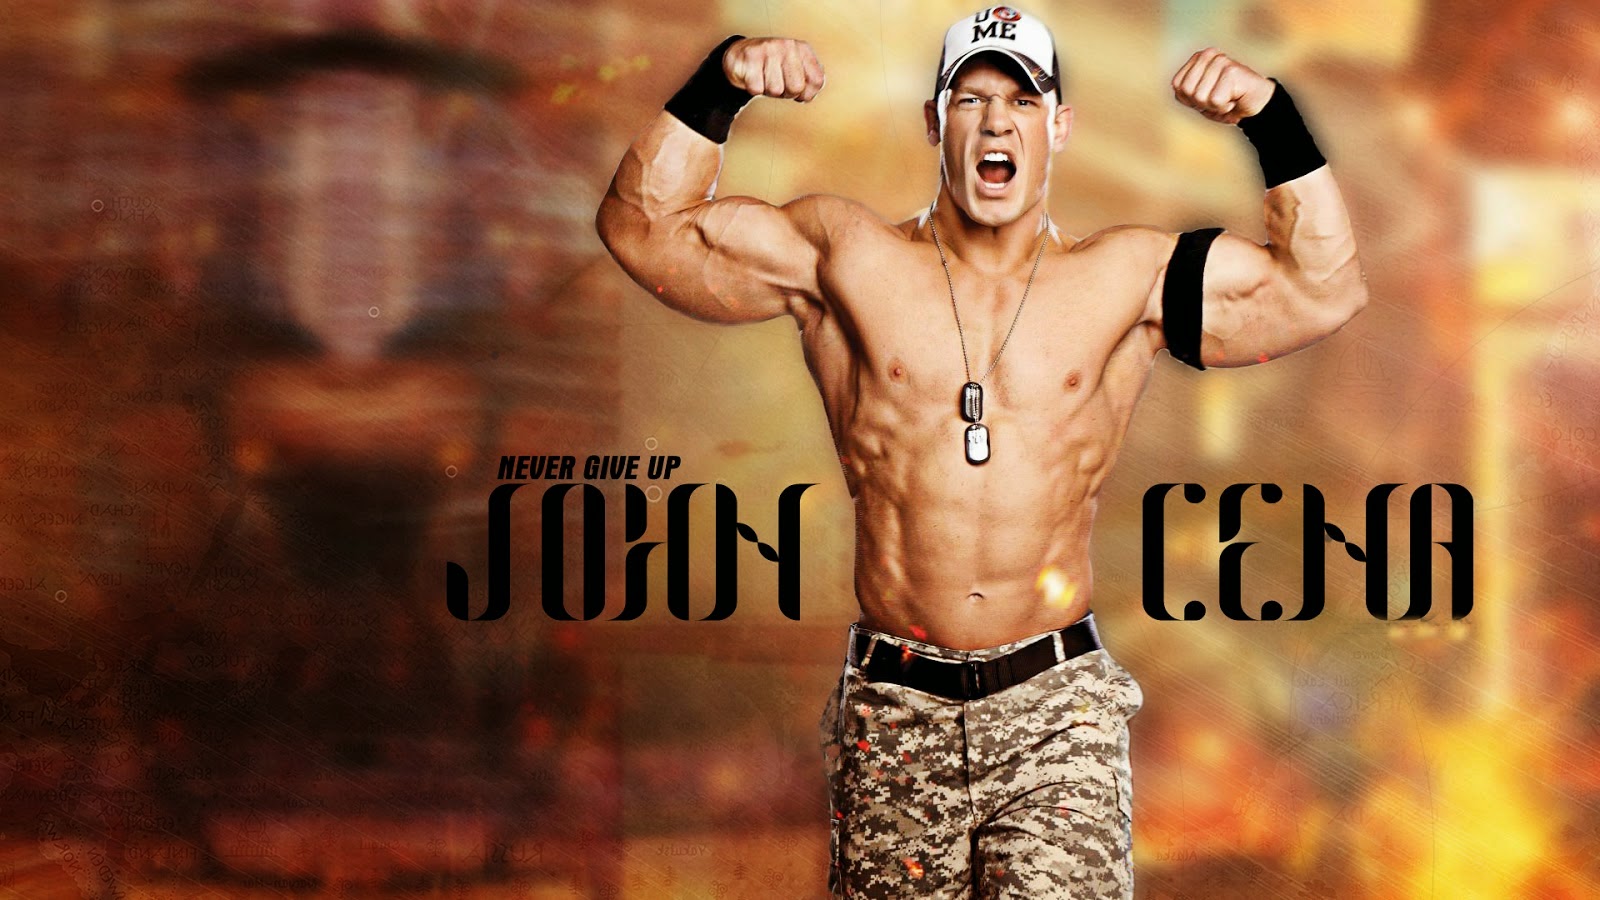 John Cena nice